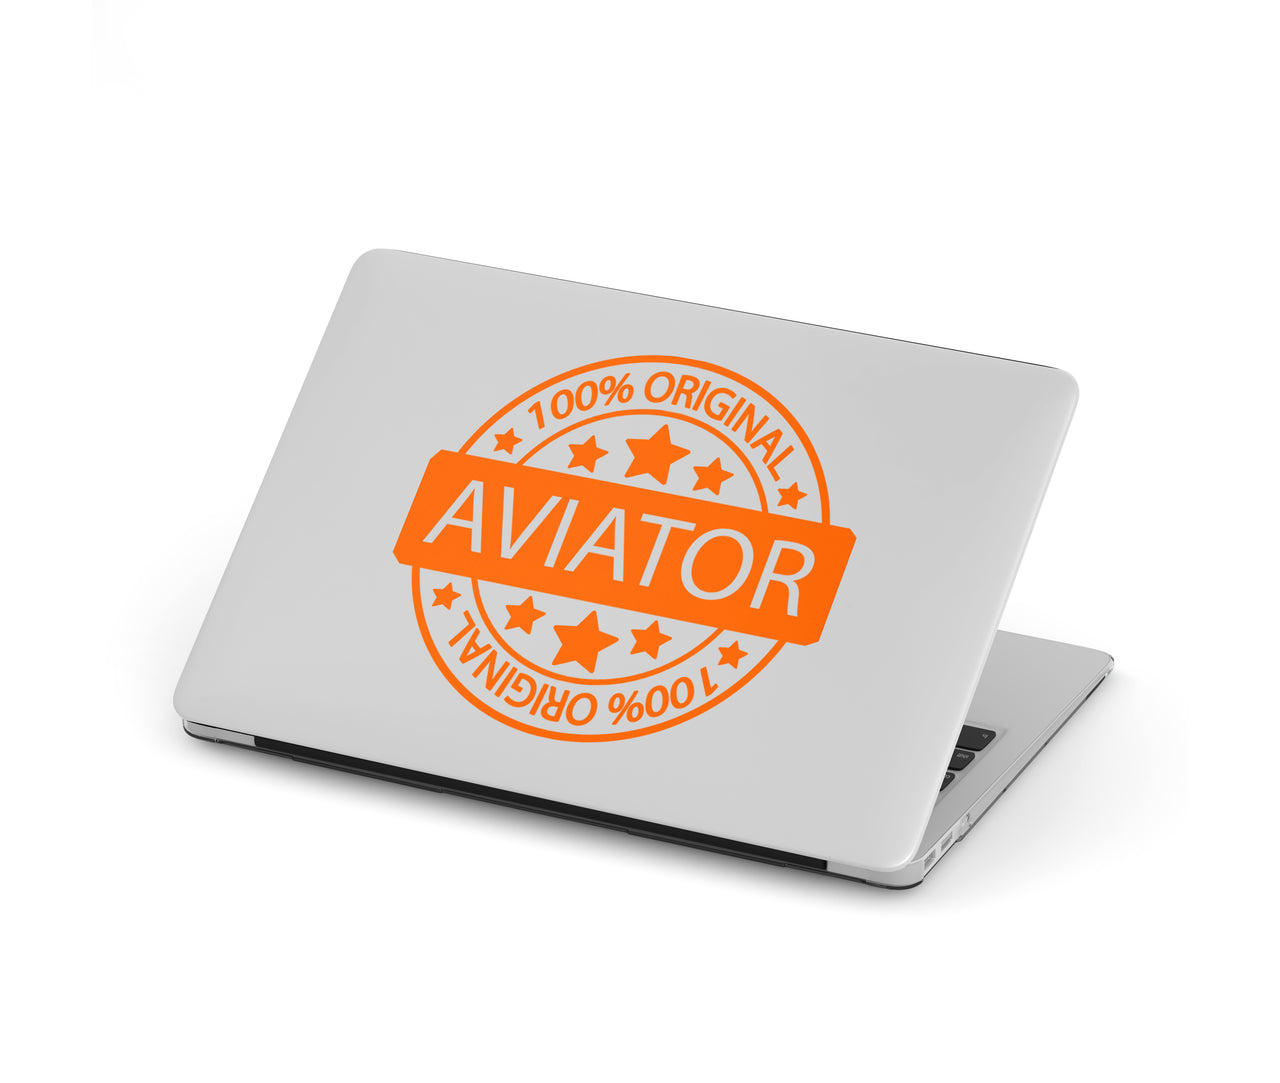 100 Original Aviator Designed Macbook Cases